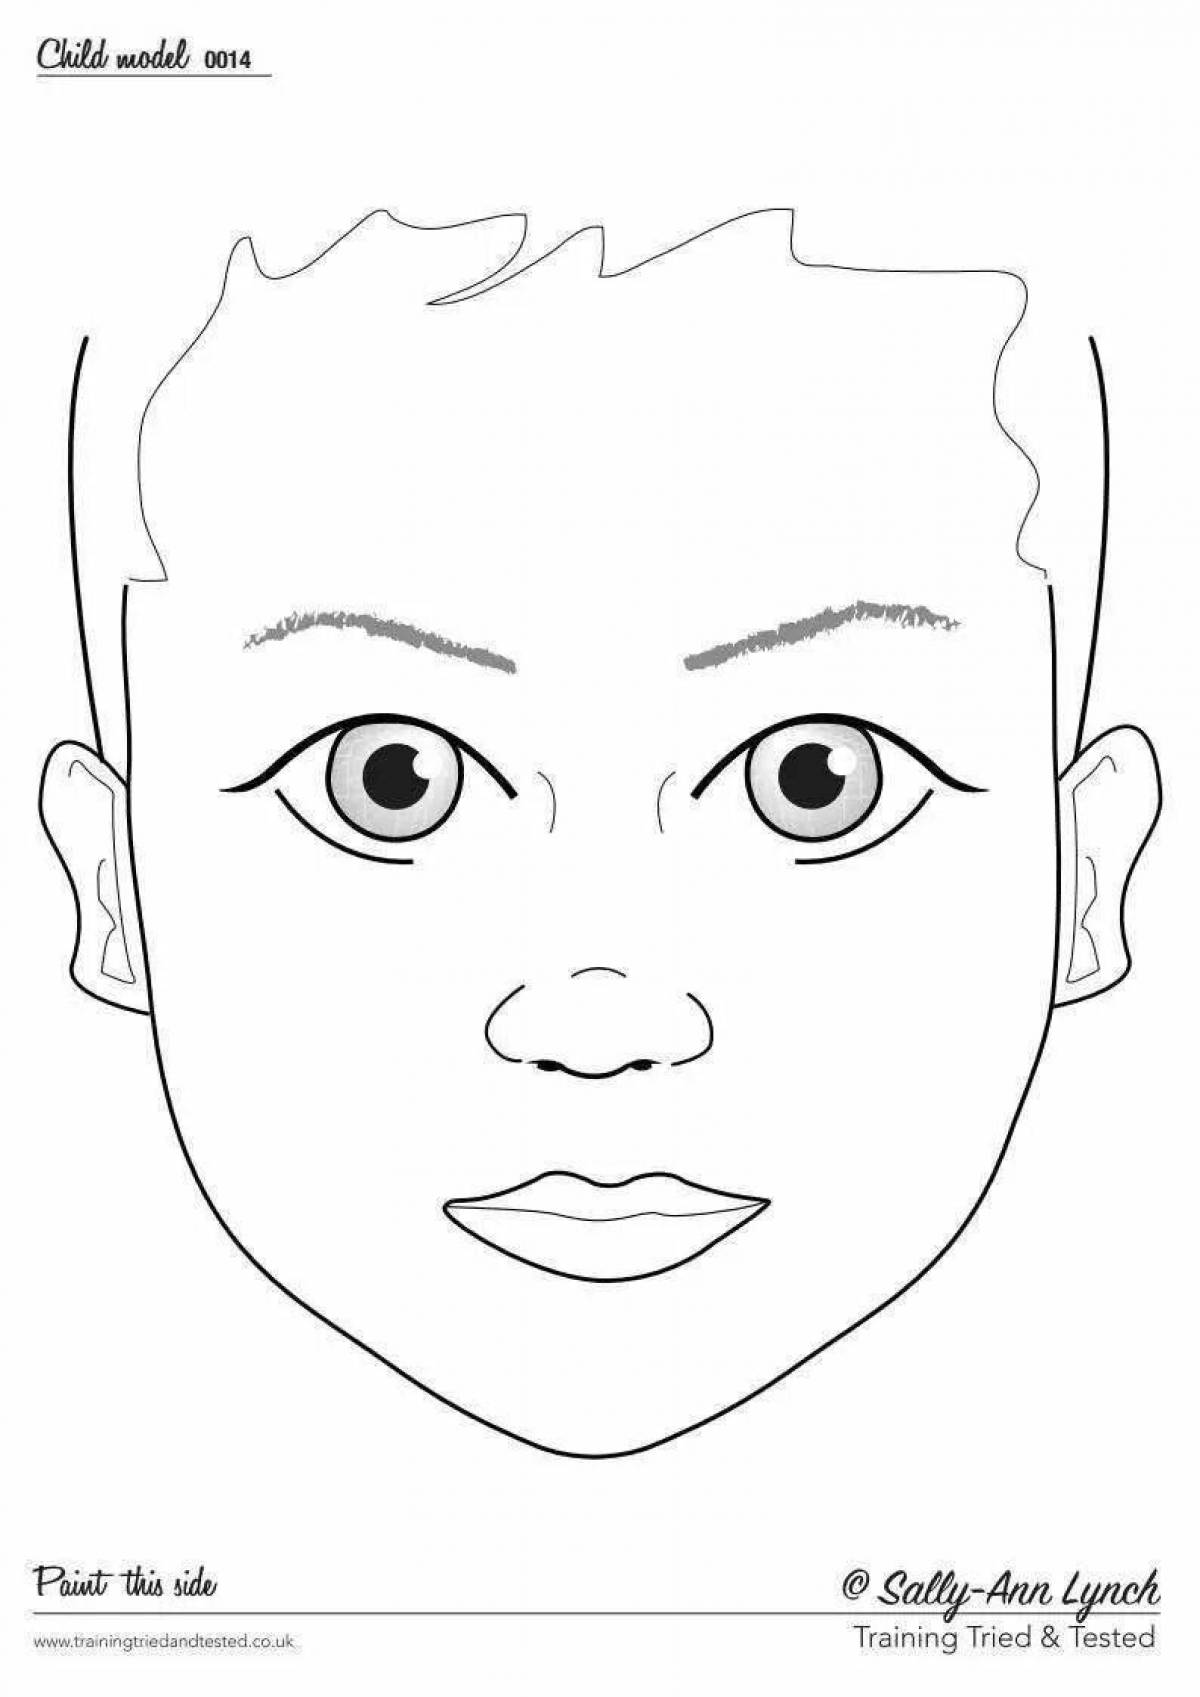 Child makeup face #13